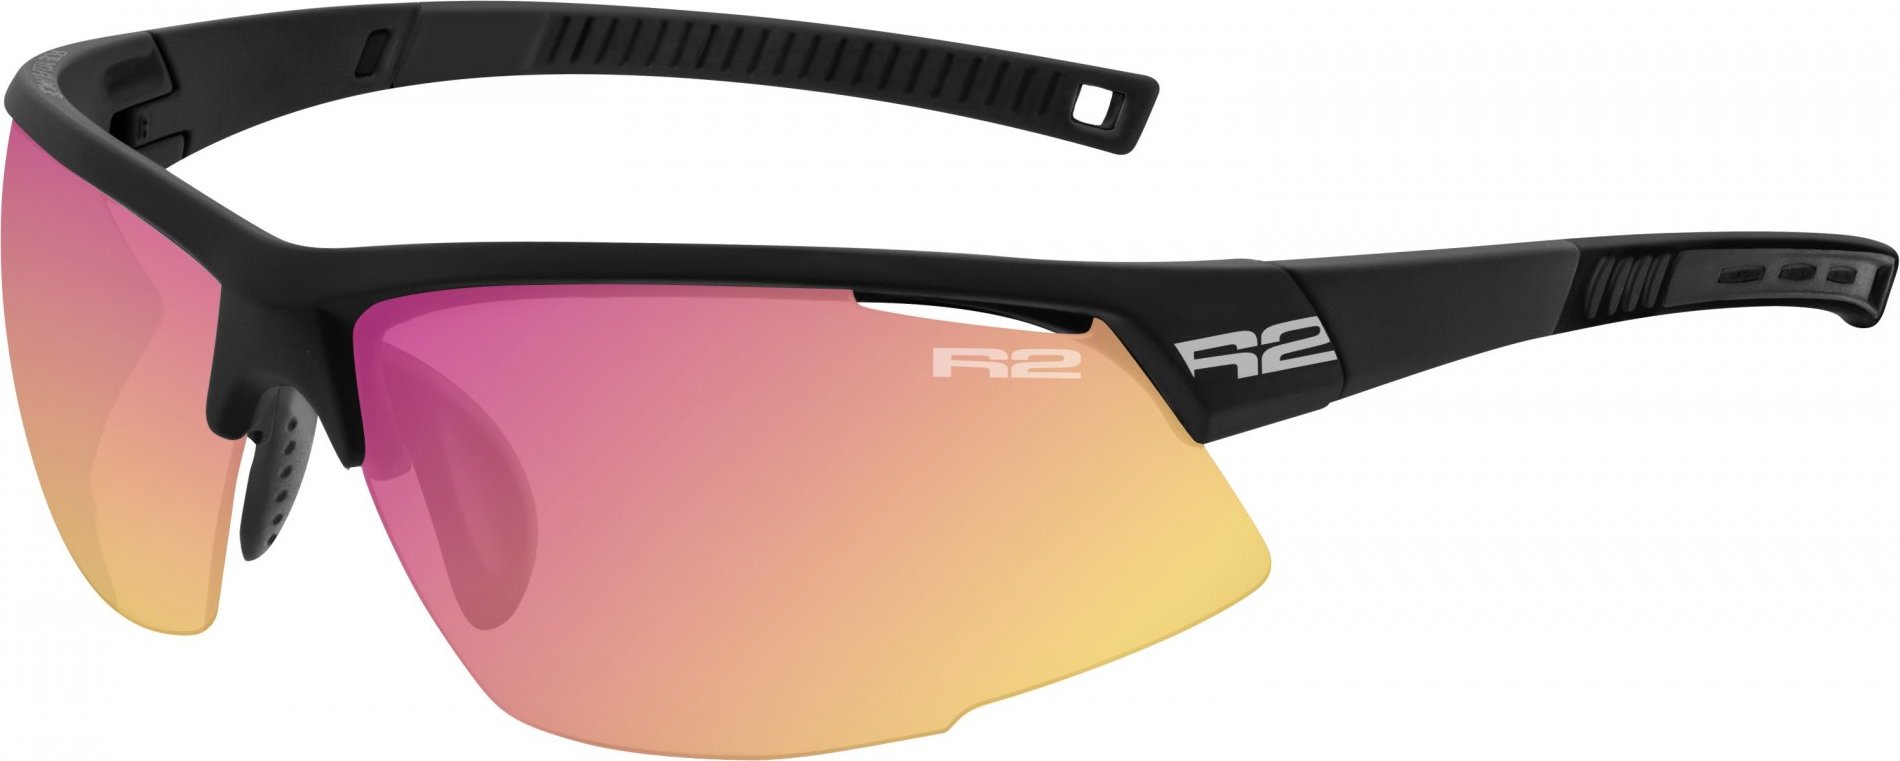 Fotochromatické sportovní brýle R2 Racer černá